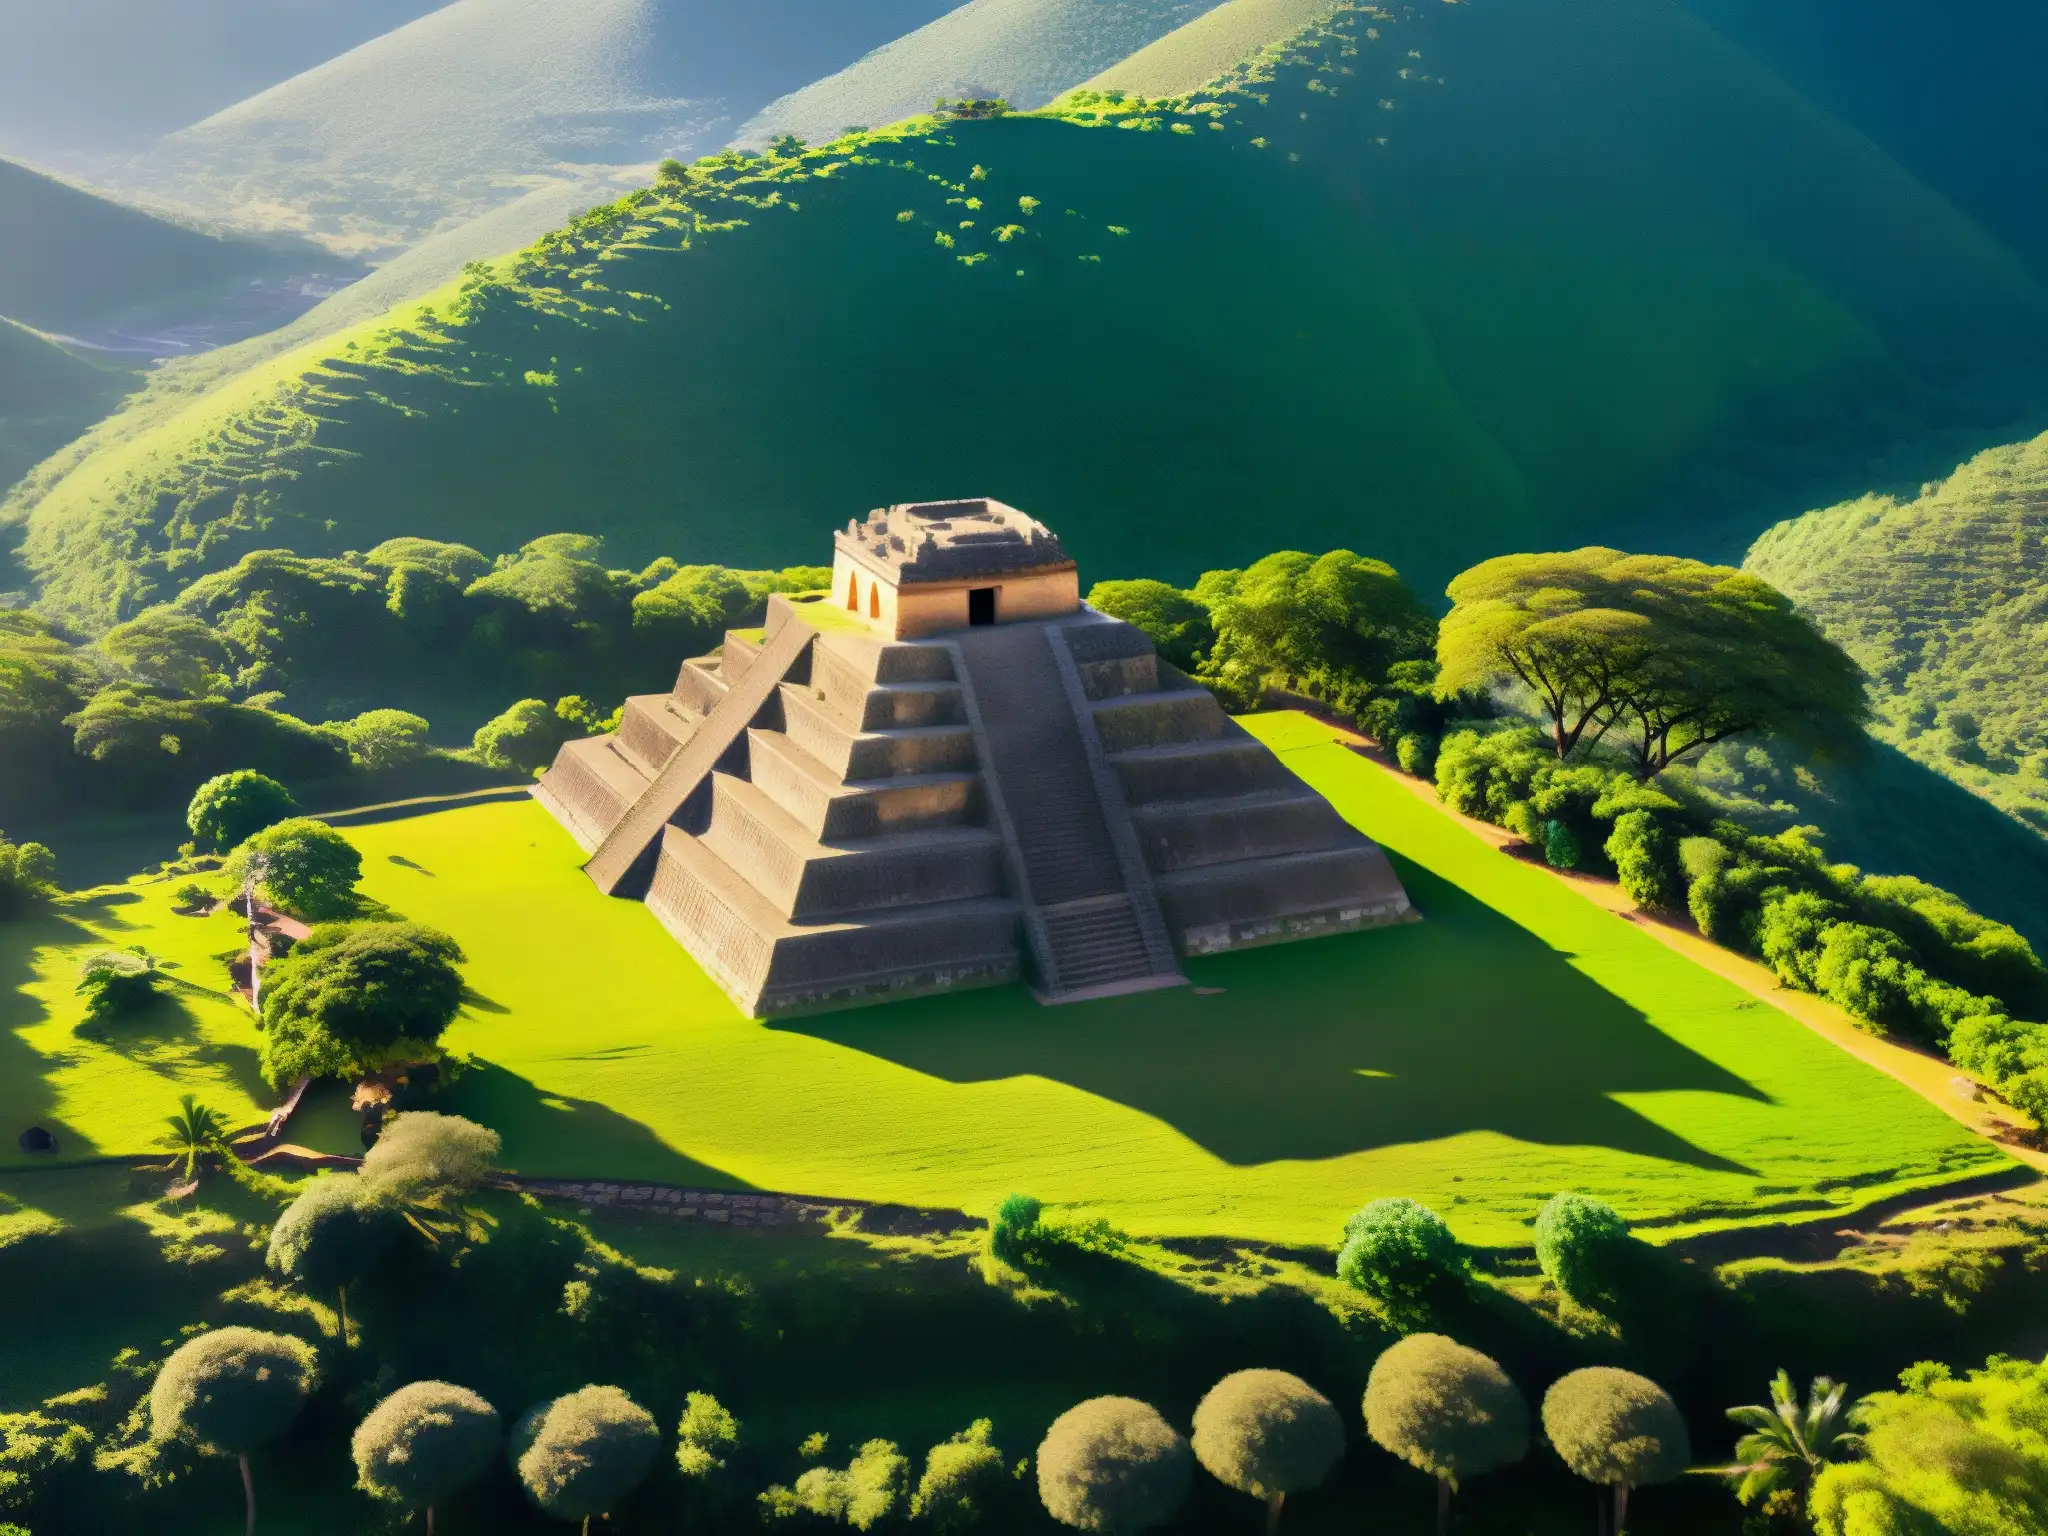 Vista aérea de El Tajín con la Pirámide de los Nichos y el ritual de los Voladores de Papantla, evocando misticismo y tradición